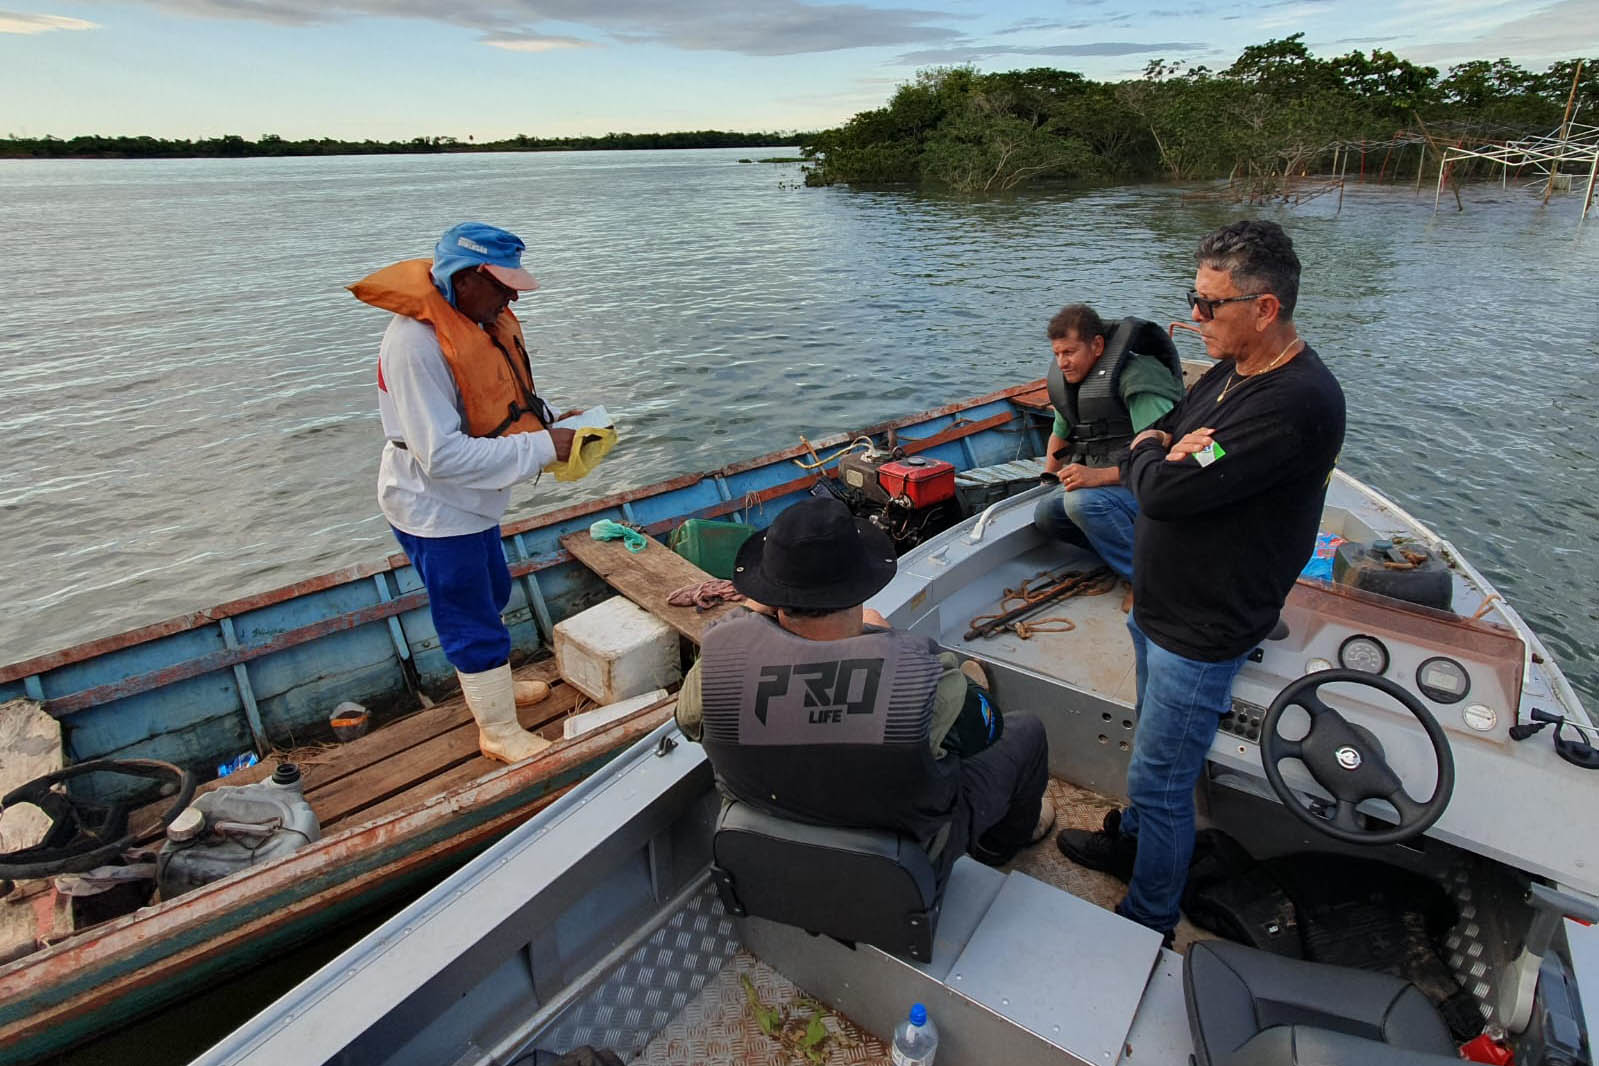 Operação do IAT no Rio Paraná busca combater a prática da pesca ilegal. Foram recolhidos materiais proibidos e aplicadas multas Foto: Comunicação IAT